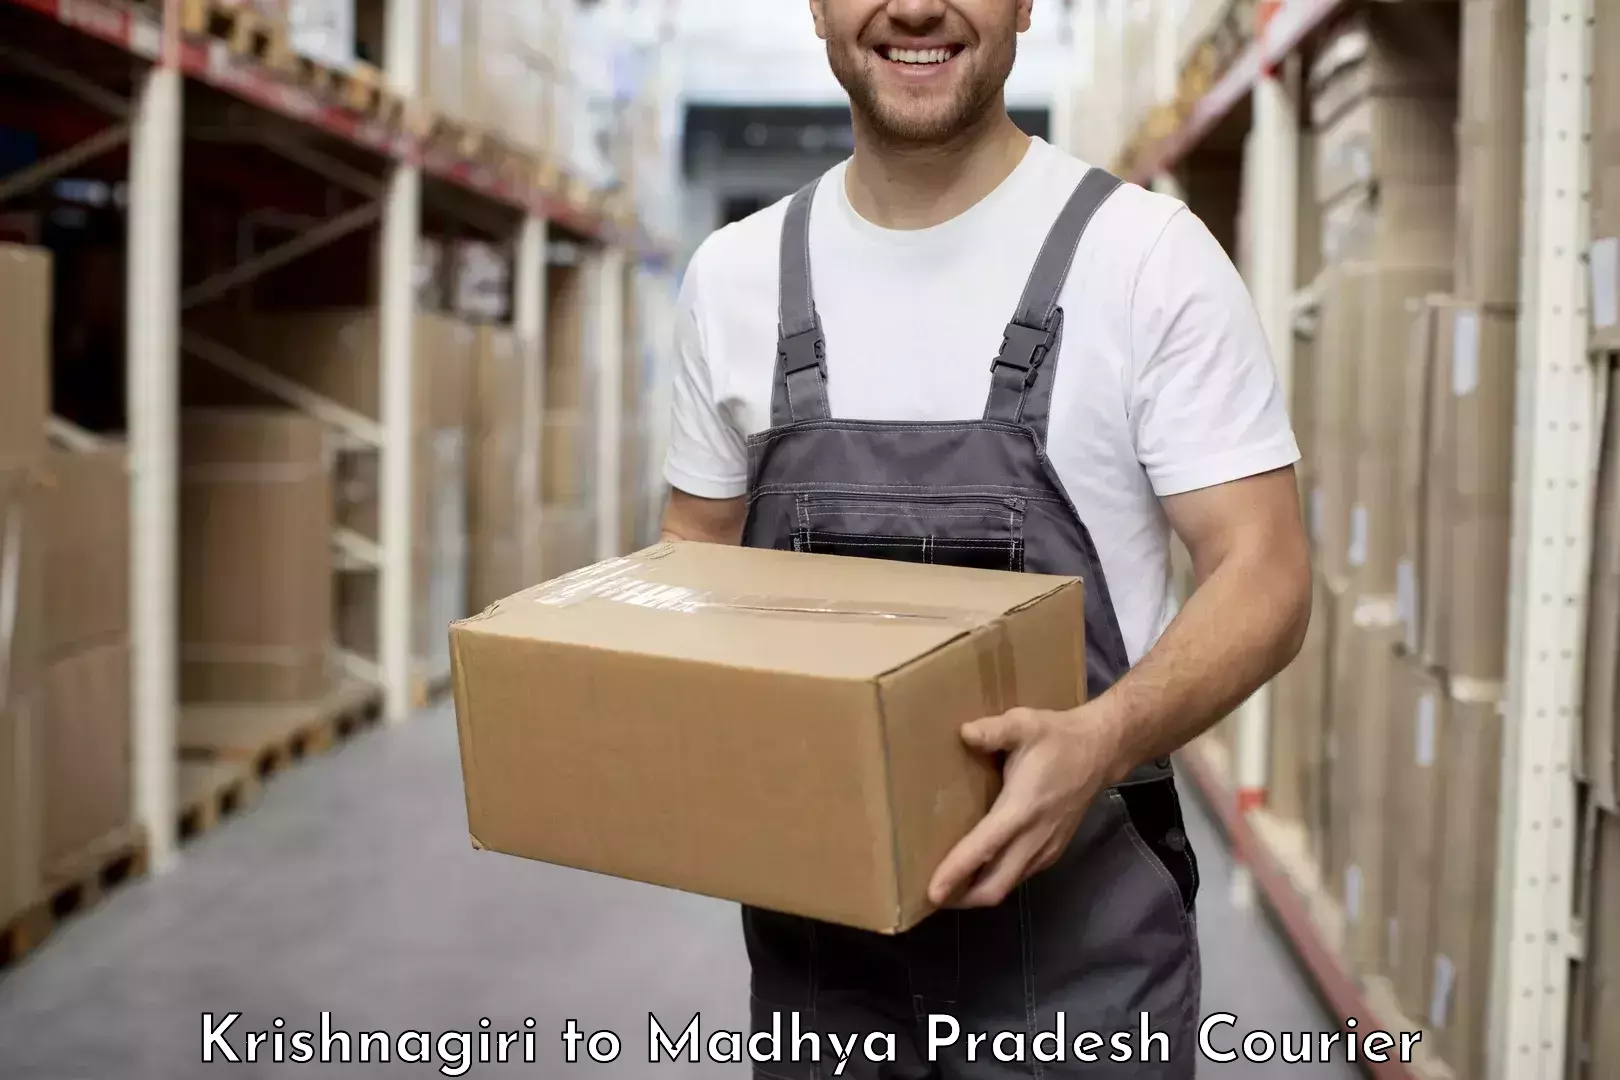 State-of-the-art courier technology Krishnagiri to Shahgarh